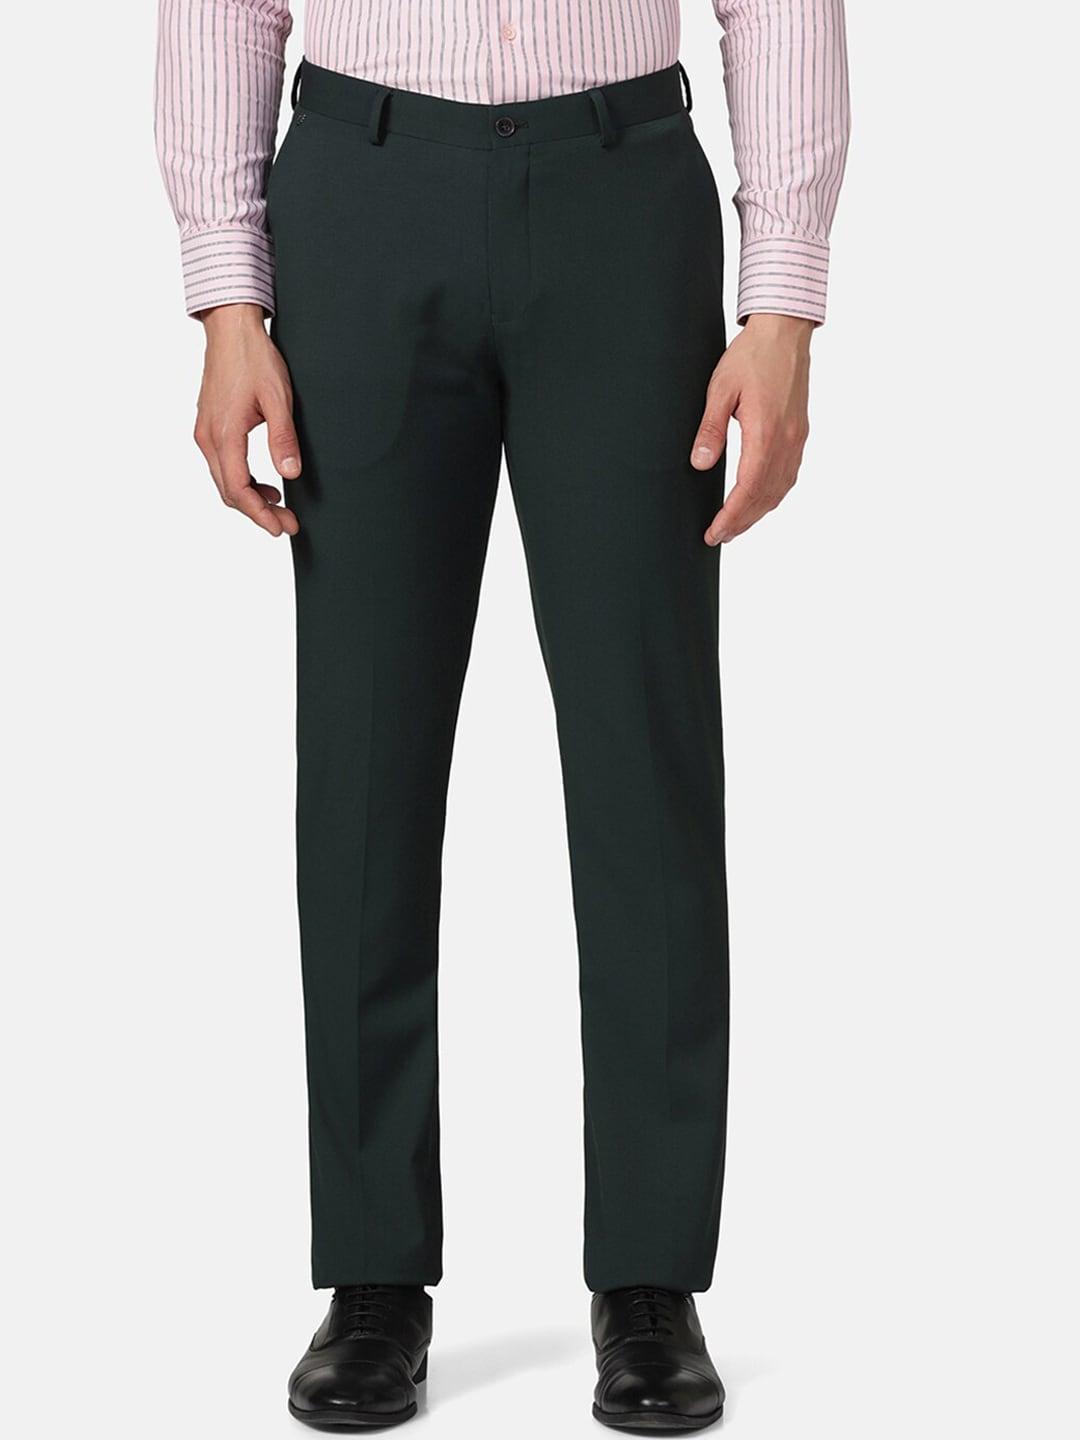 blackberrys-men-mid-raise-carrot-fit-formal-trousers